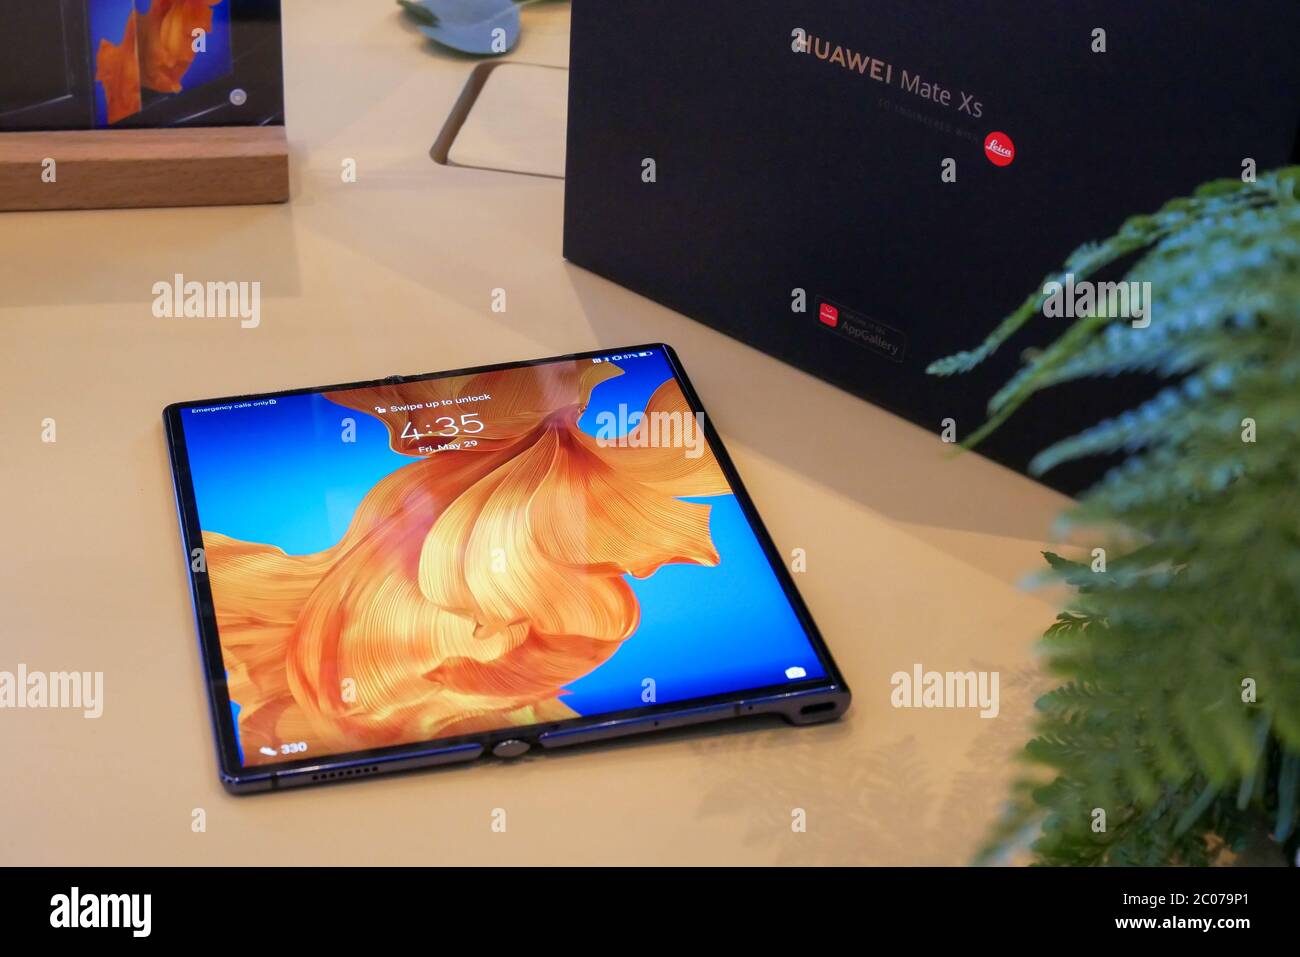 Bangkok, Thailand - 4. JUNI 2020: Huawei Mate XS wurde in Thailand vorgestellt, ein Android-basiertes faltbares High-End-Smartphone von Huawei, IT i Stockfoto